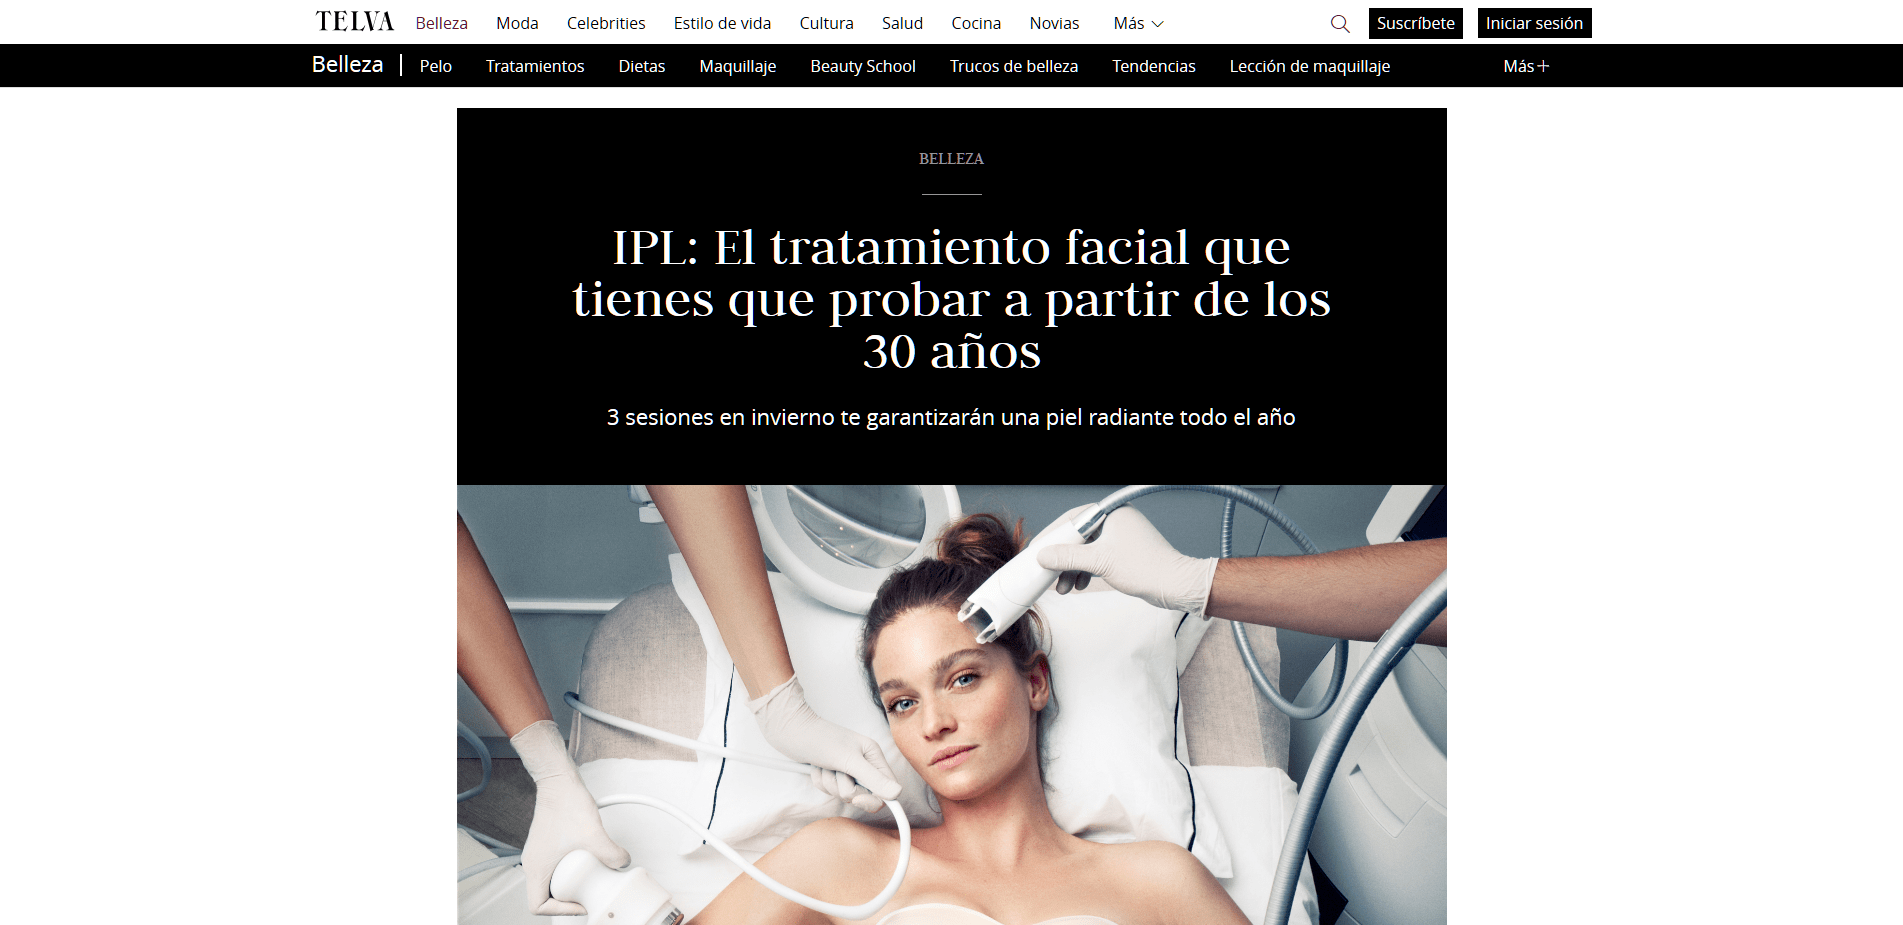 Peluqueria Vigo Sirope IPL El tratamiento facial que tienes que probar a partir de los 30 años